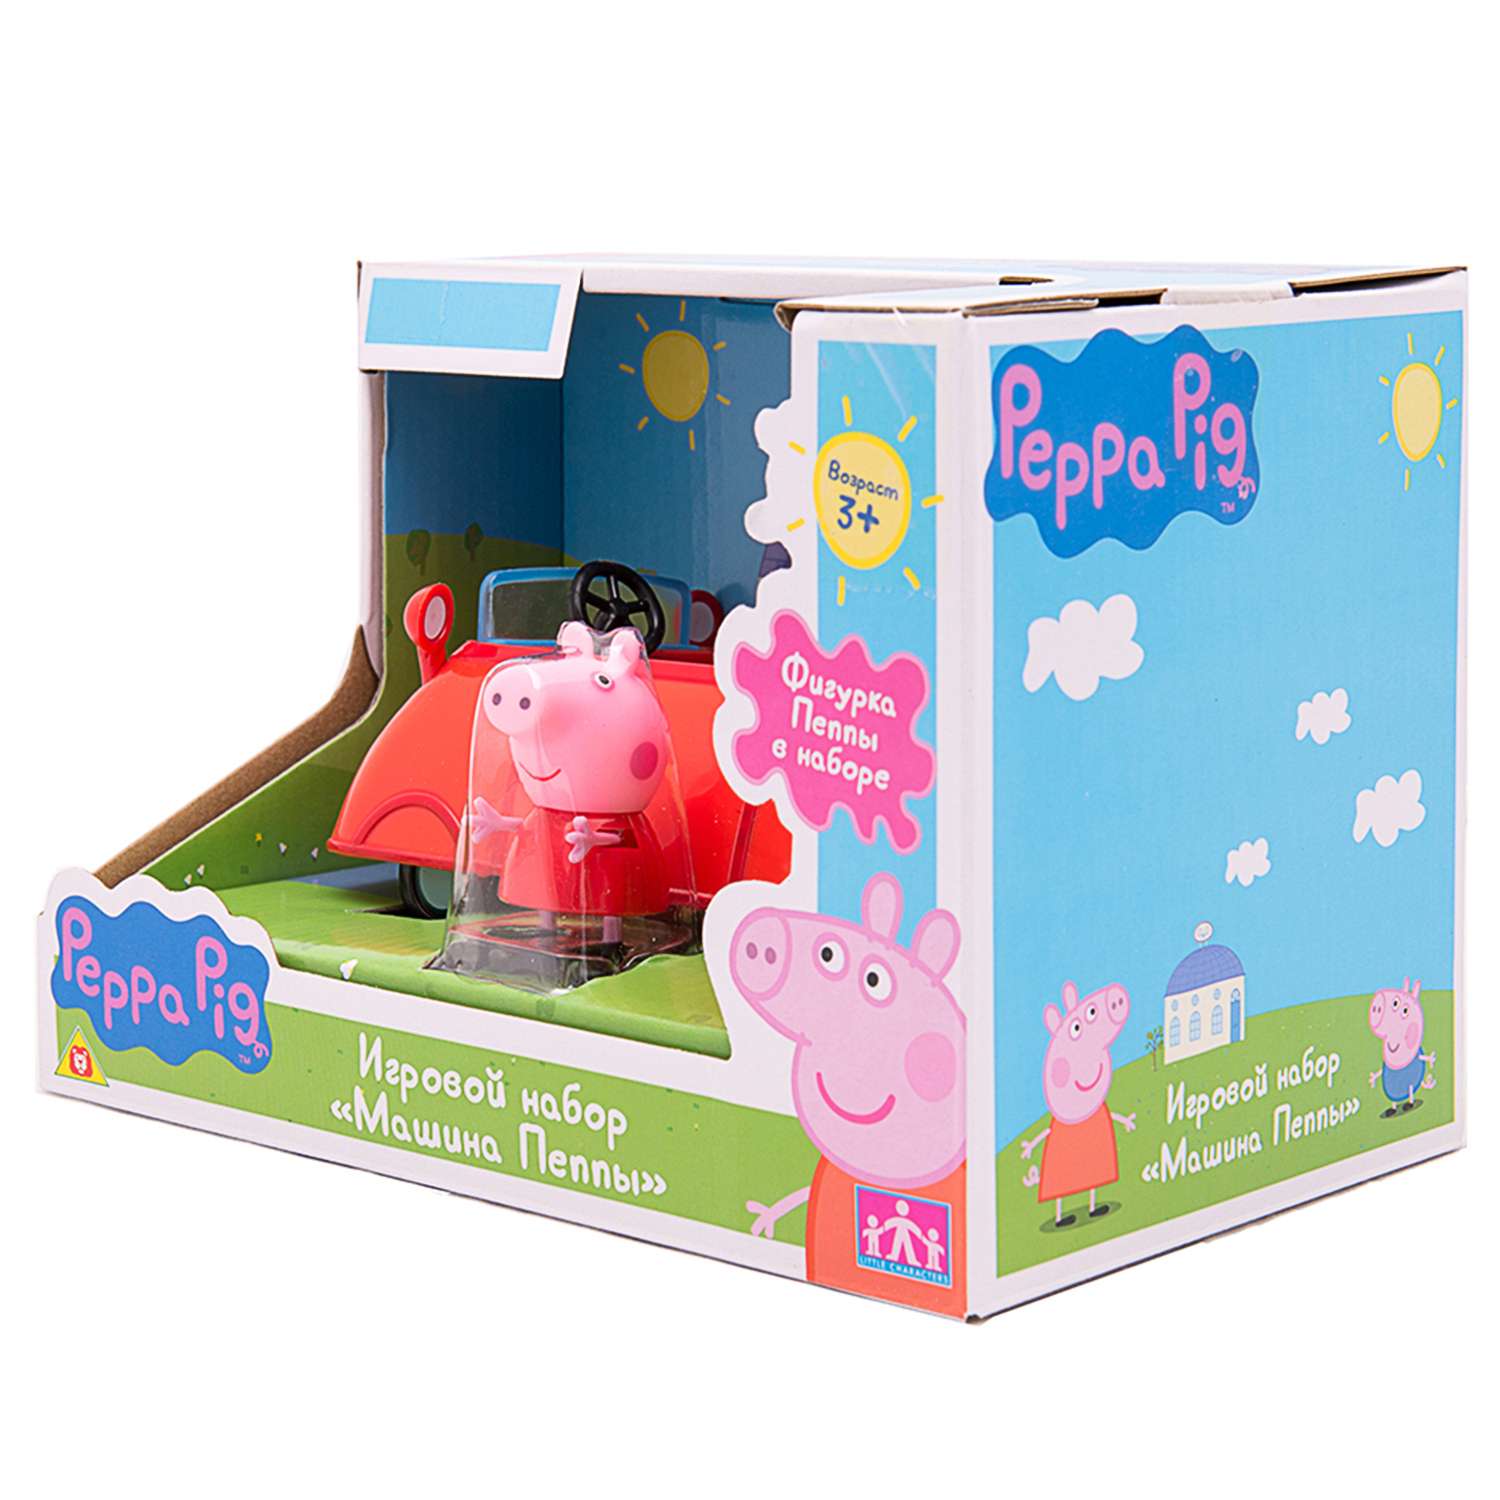 Игровой набор Свинка Пеппа машина Пеппы (фигурка Пеппы, машинка) - фото 8